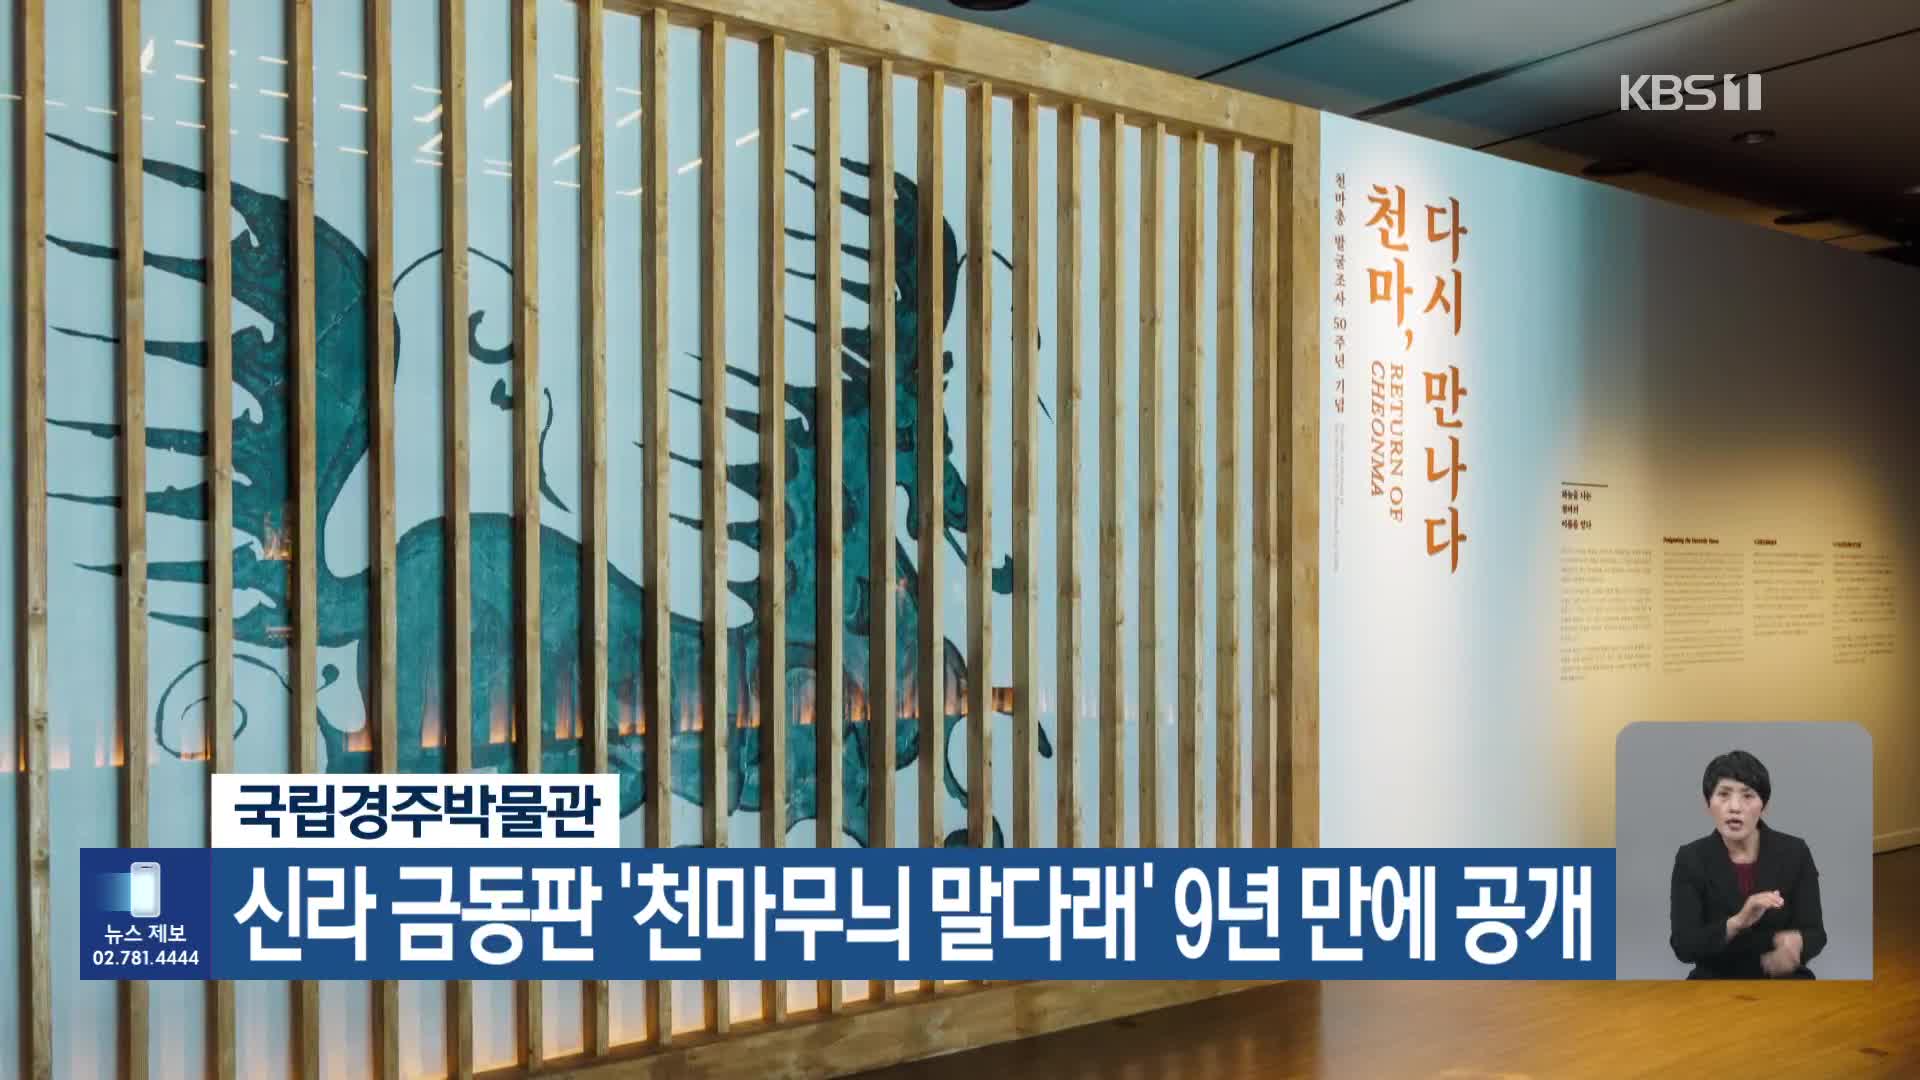 국립경주박물관, 신라 금동판 ‘천마무늬 말다래’ 9년 만에 공개